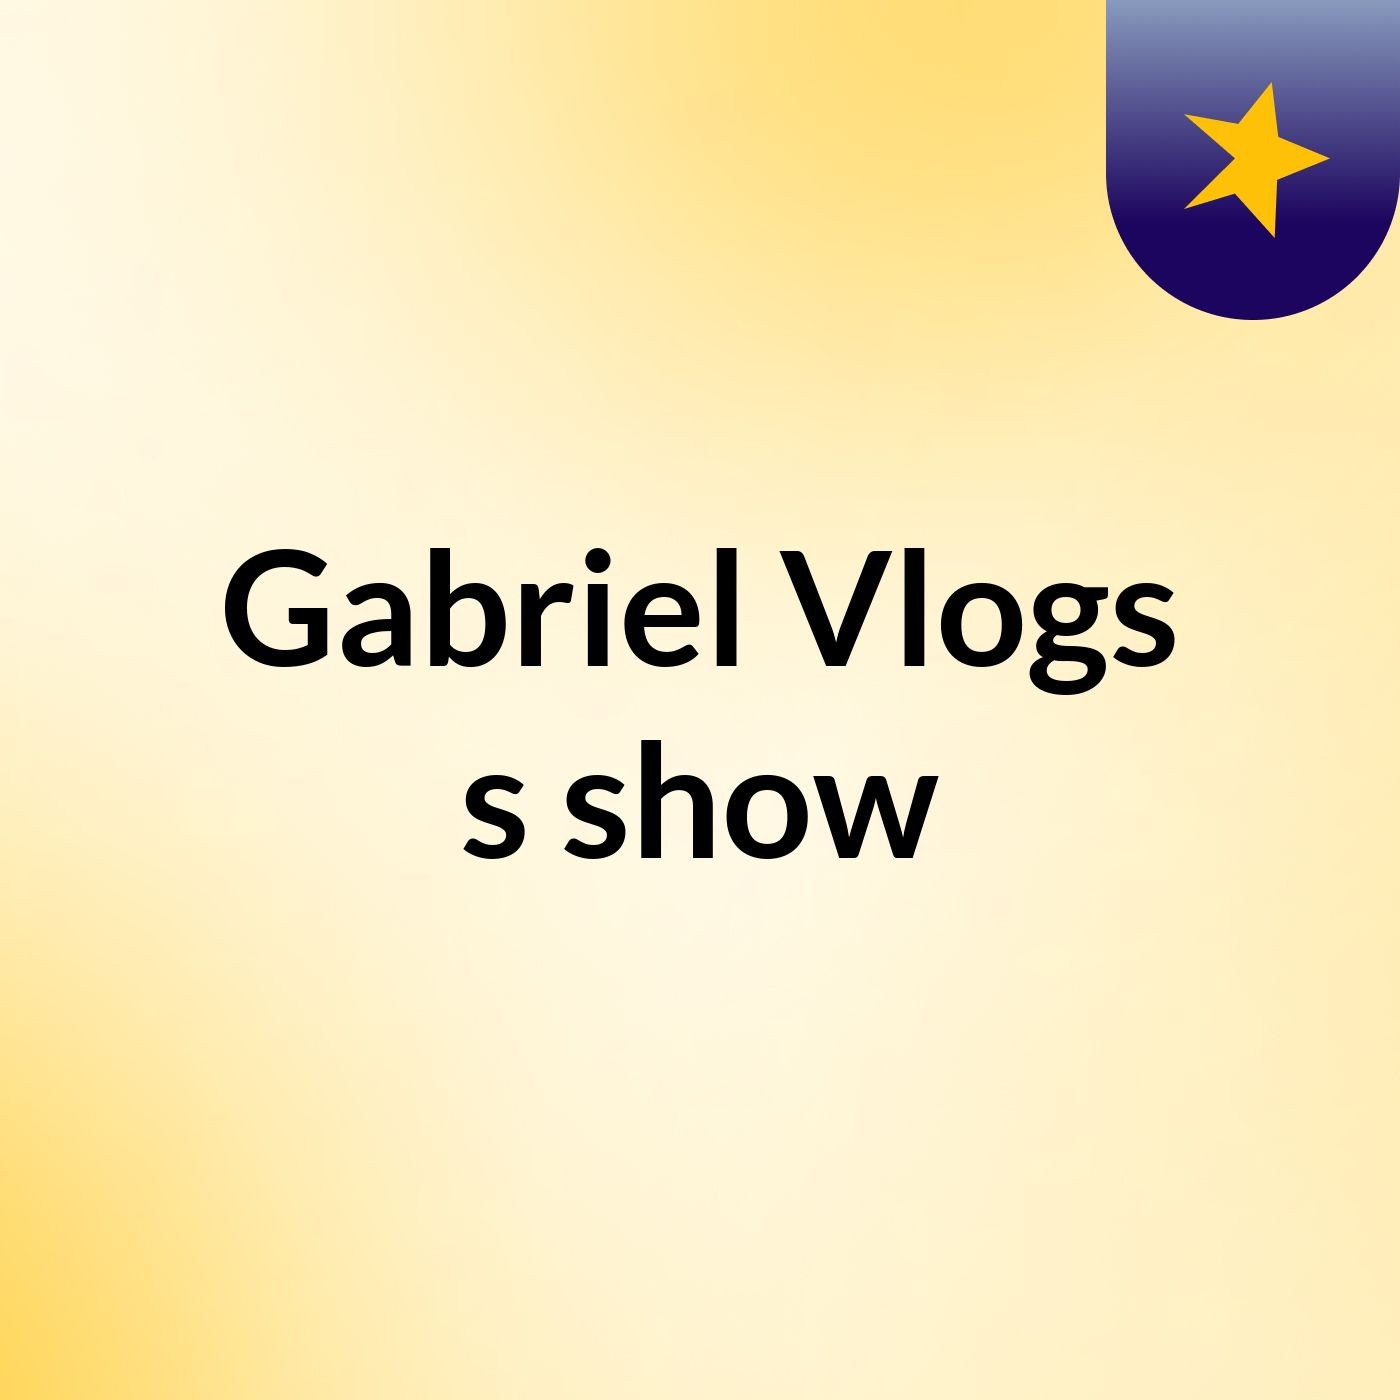 Gabriel Vlogs's show